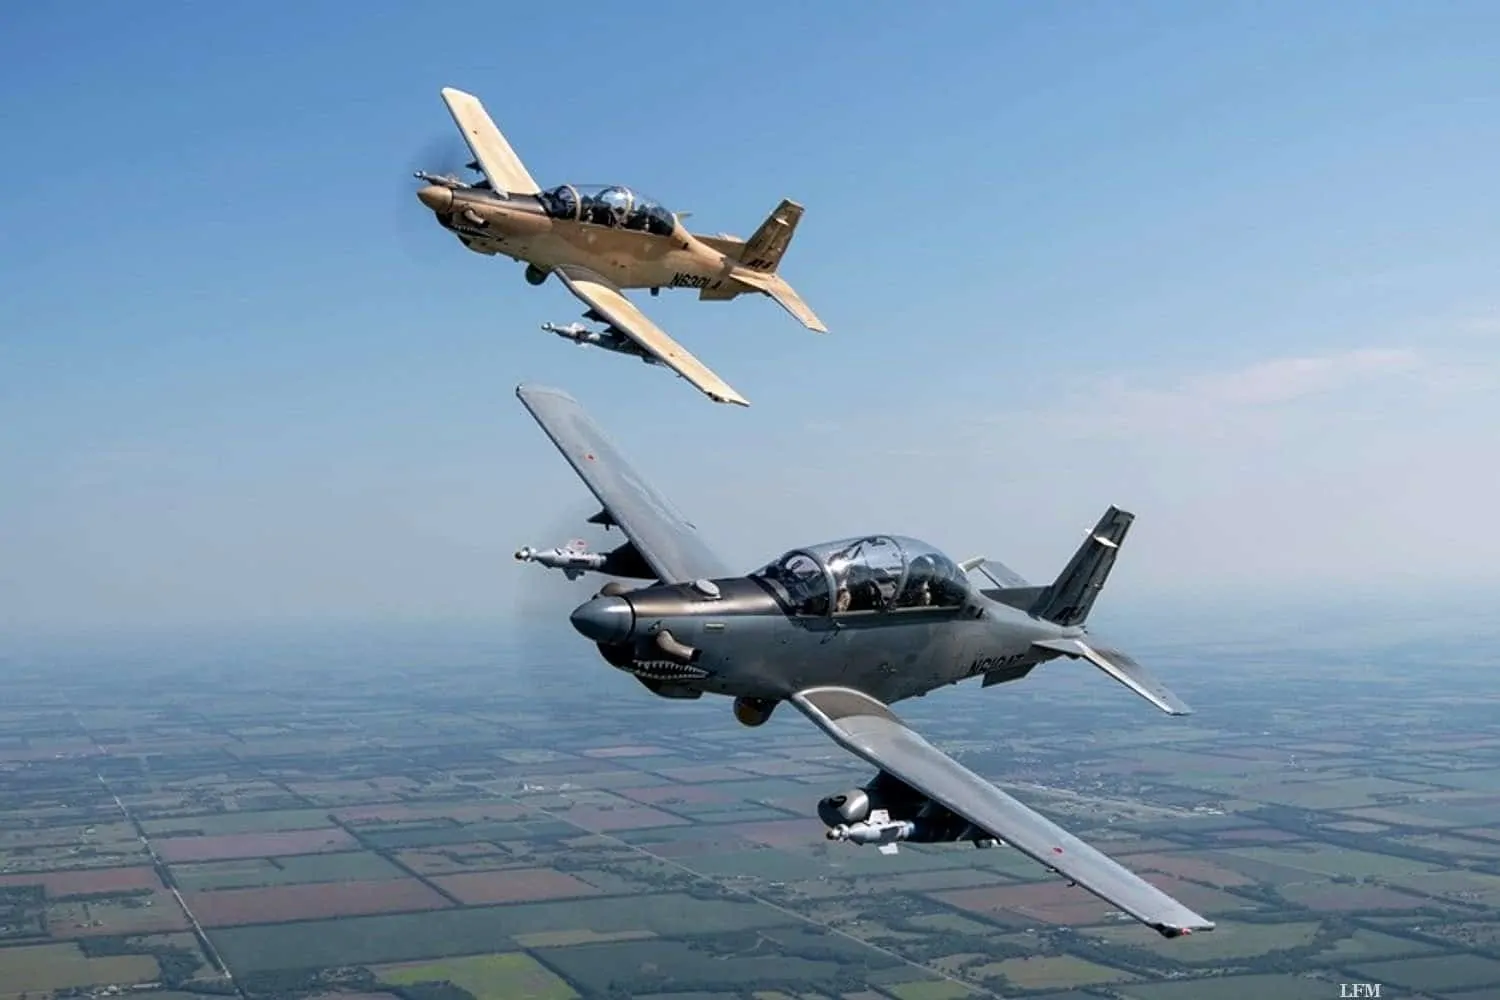 Beechcraft liefert AT-6 Wolverine an US-Air Force